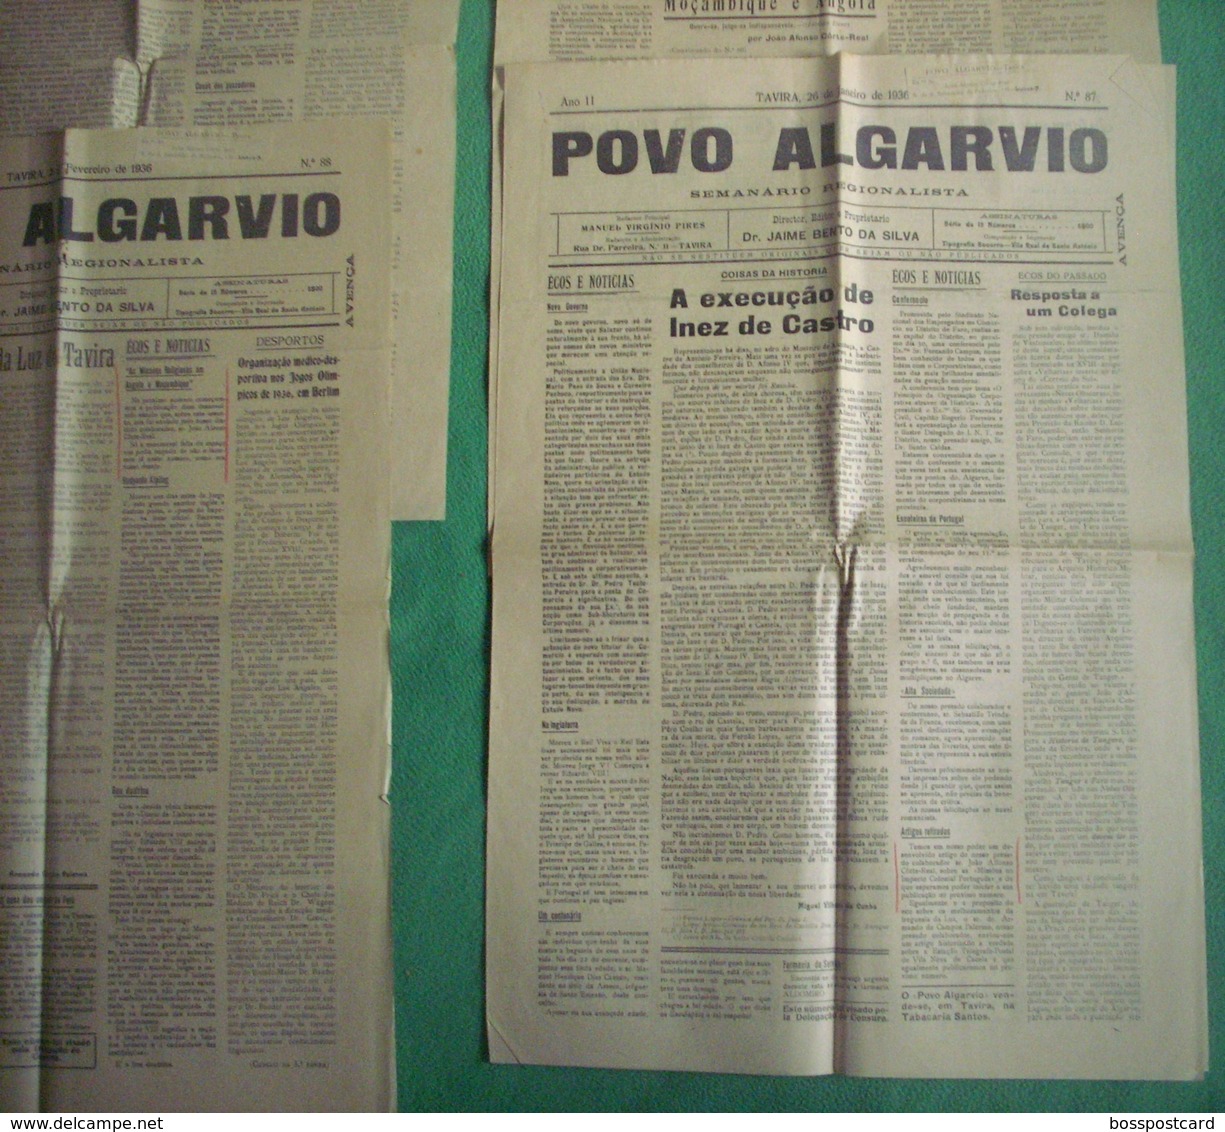 Tavira - 4 Jornais "Povo Algarvio" Nº 87, 88, 89, 92 De 1936 - Imprensa. Faro. - Allgemeine Literatur